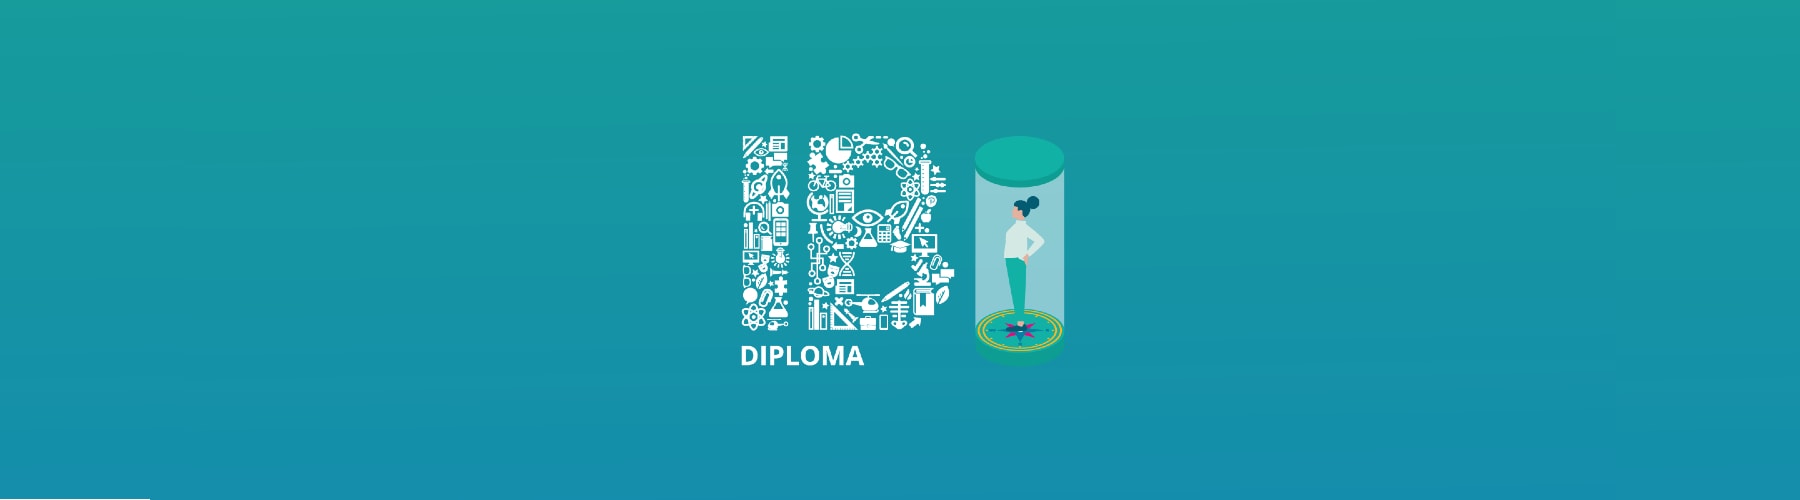 IB Diploma hero banner